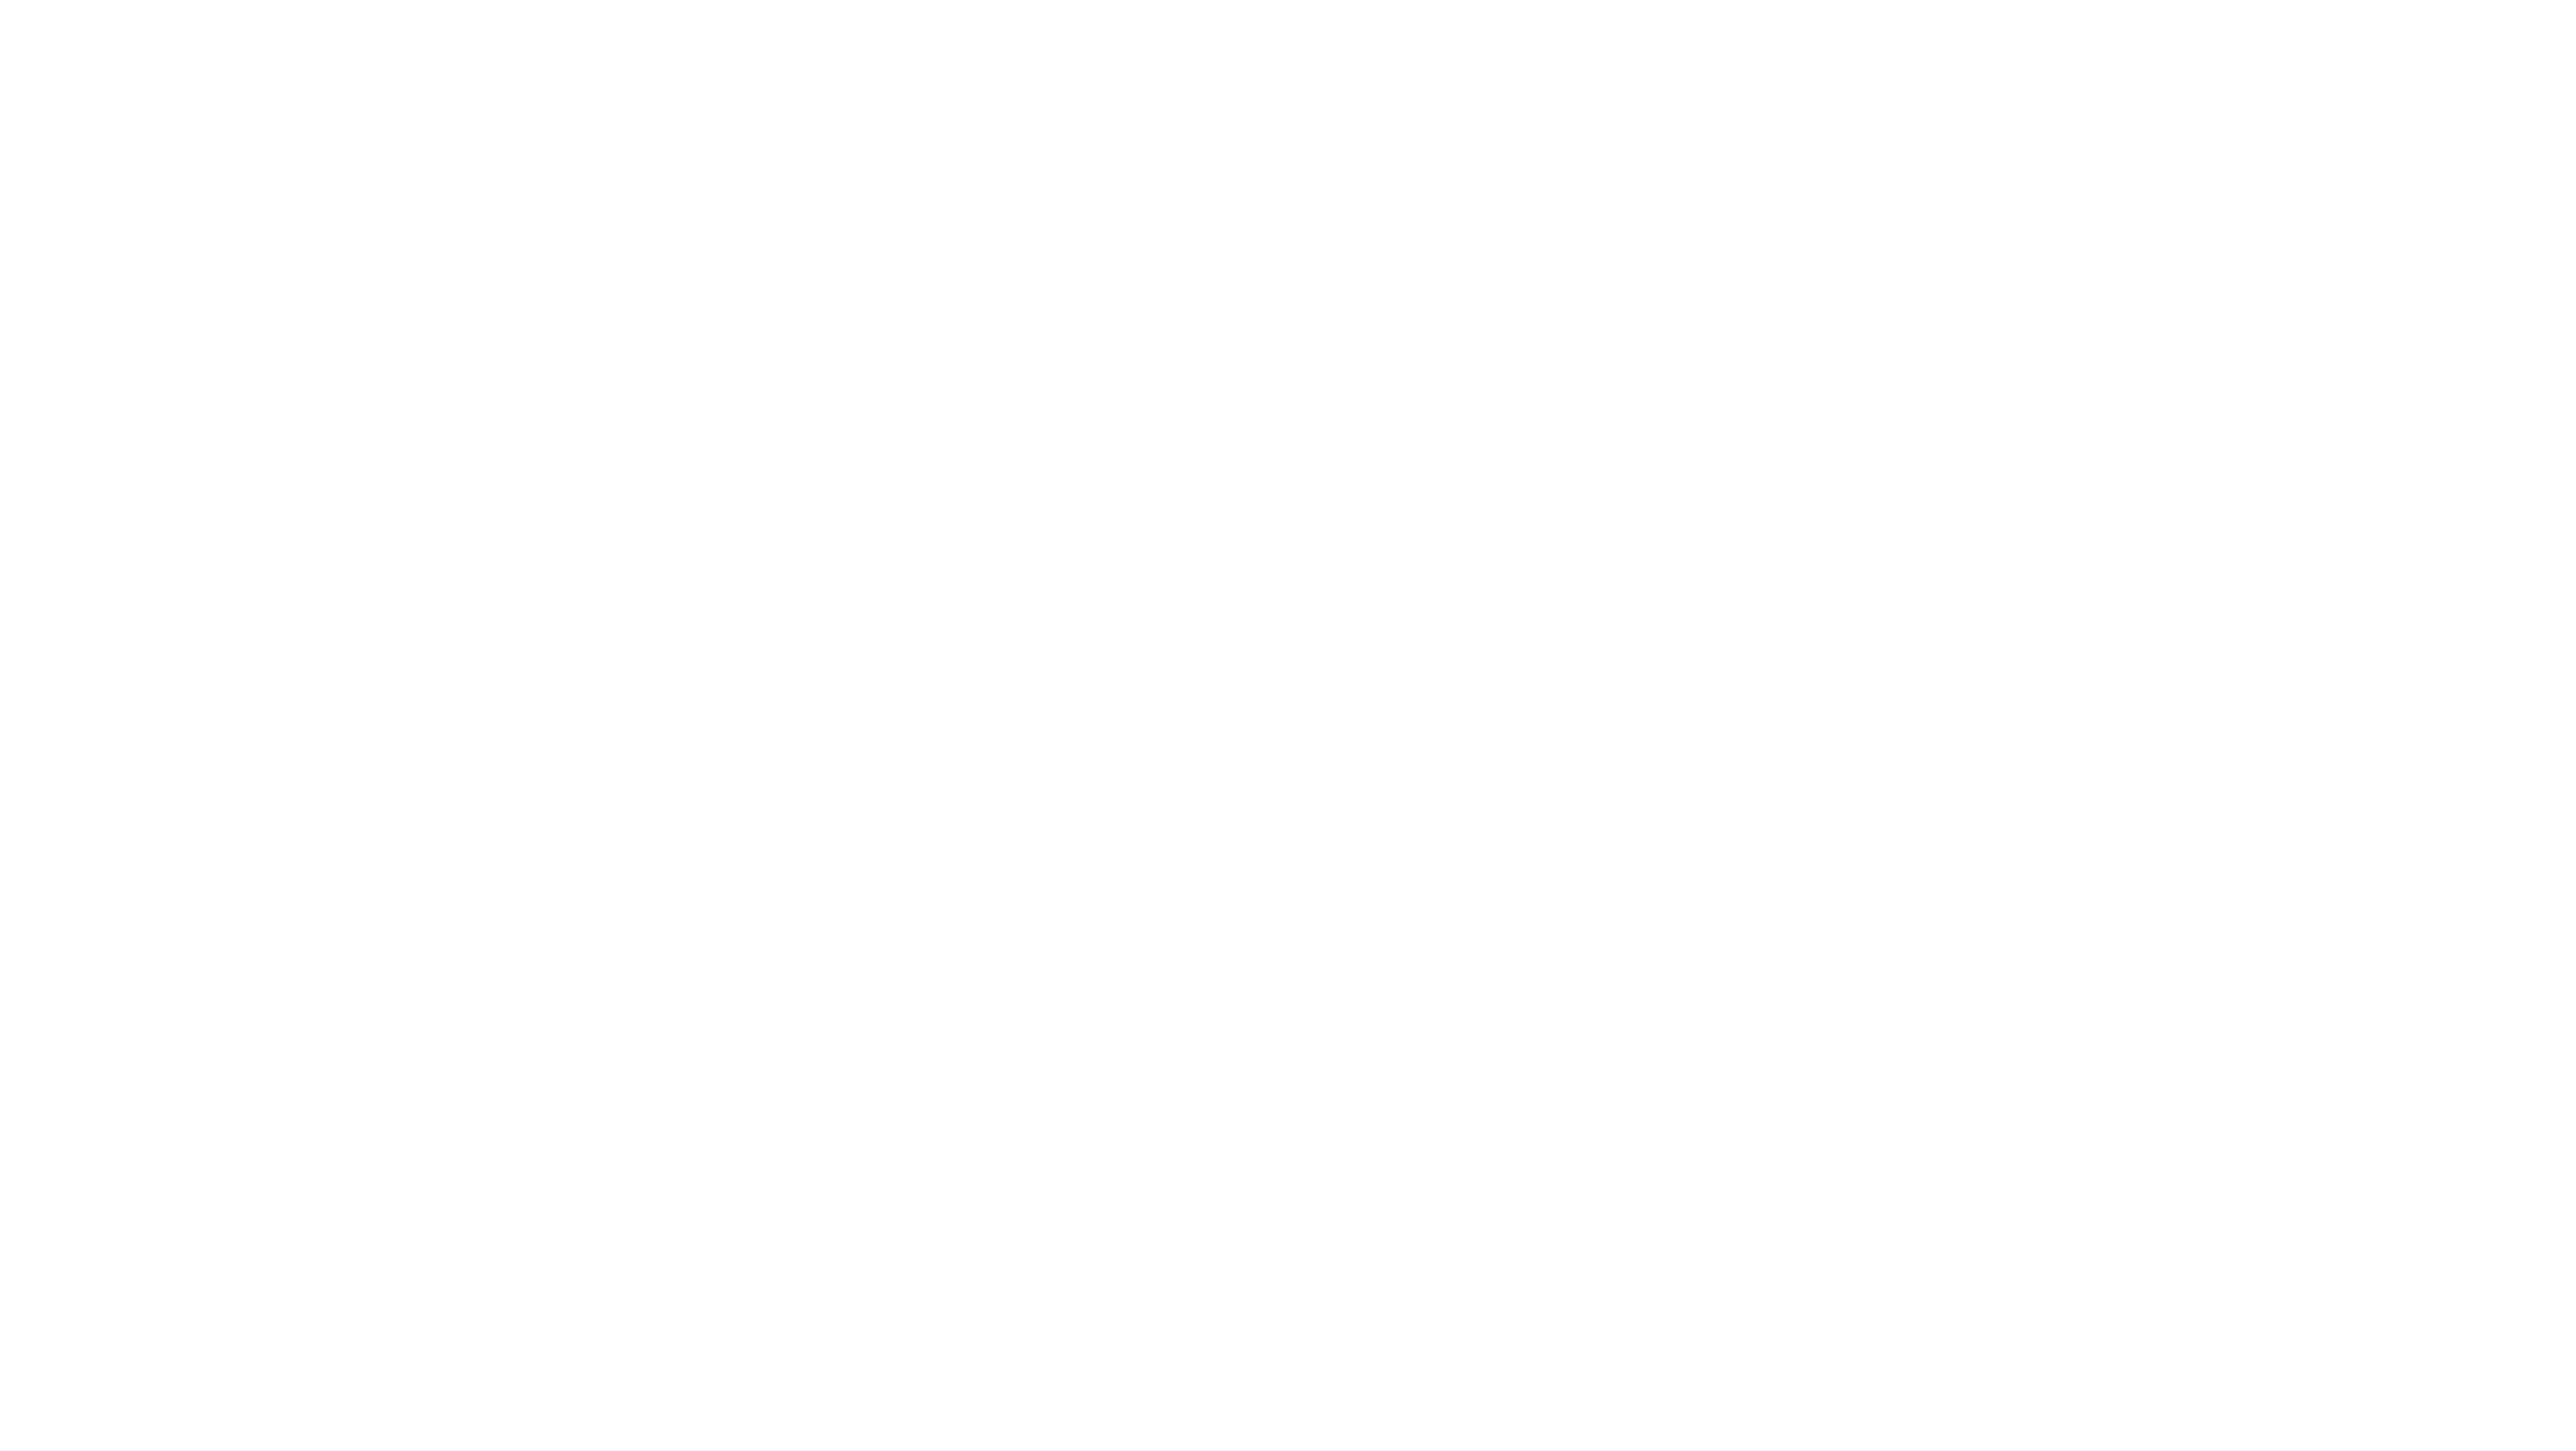 Hindu American Foundation